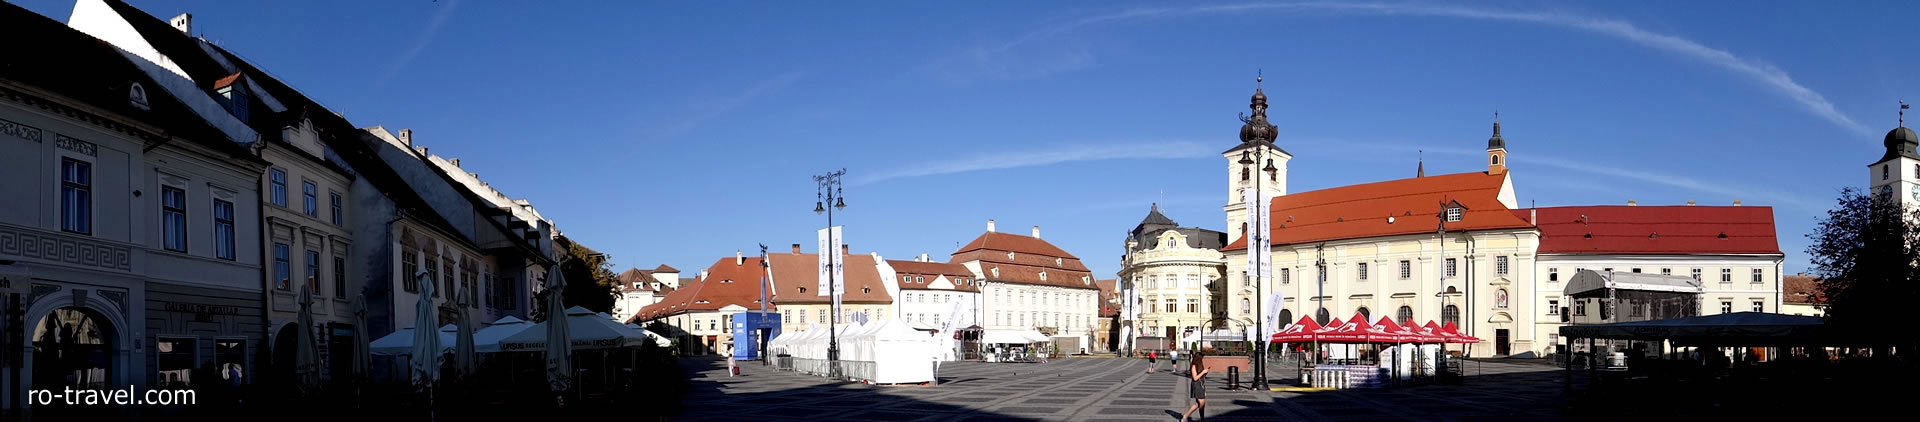 Sibiu Piata Mare